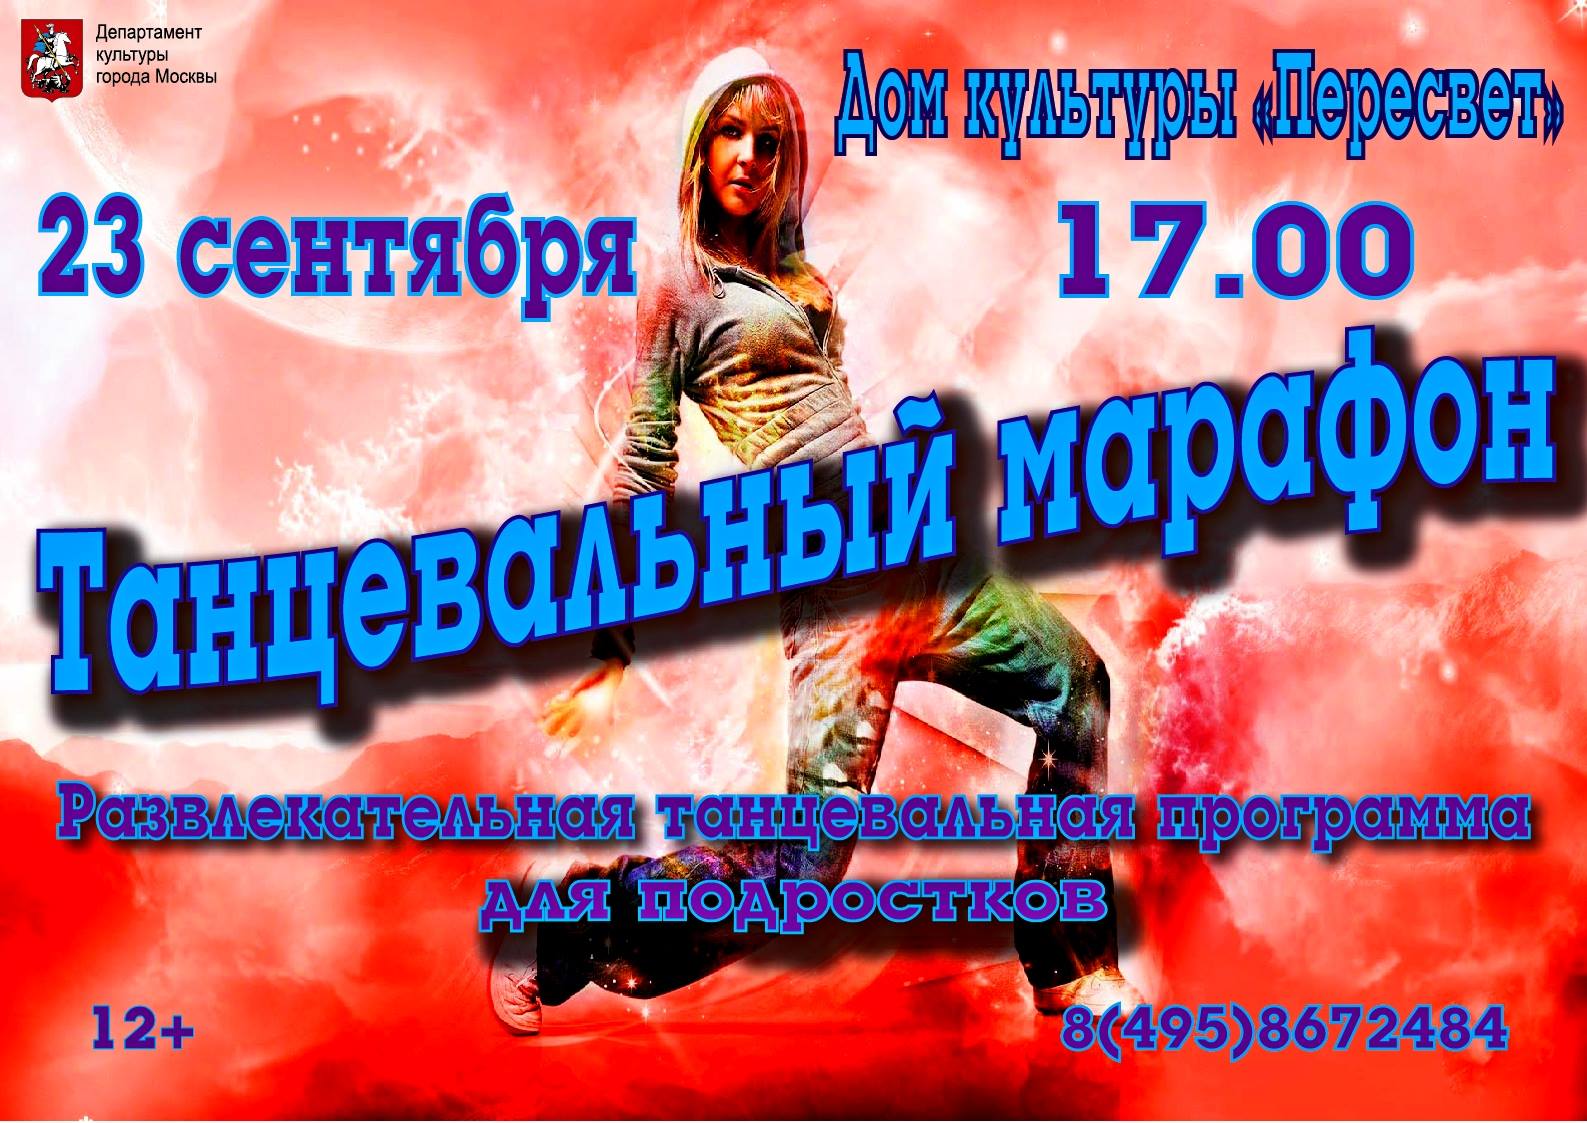 В Доме Культуры "Пересвет" 23 сентября в 17.00 состоится развлекательная танцевальная программа для подростков "Танцевальный марафон" 